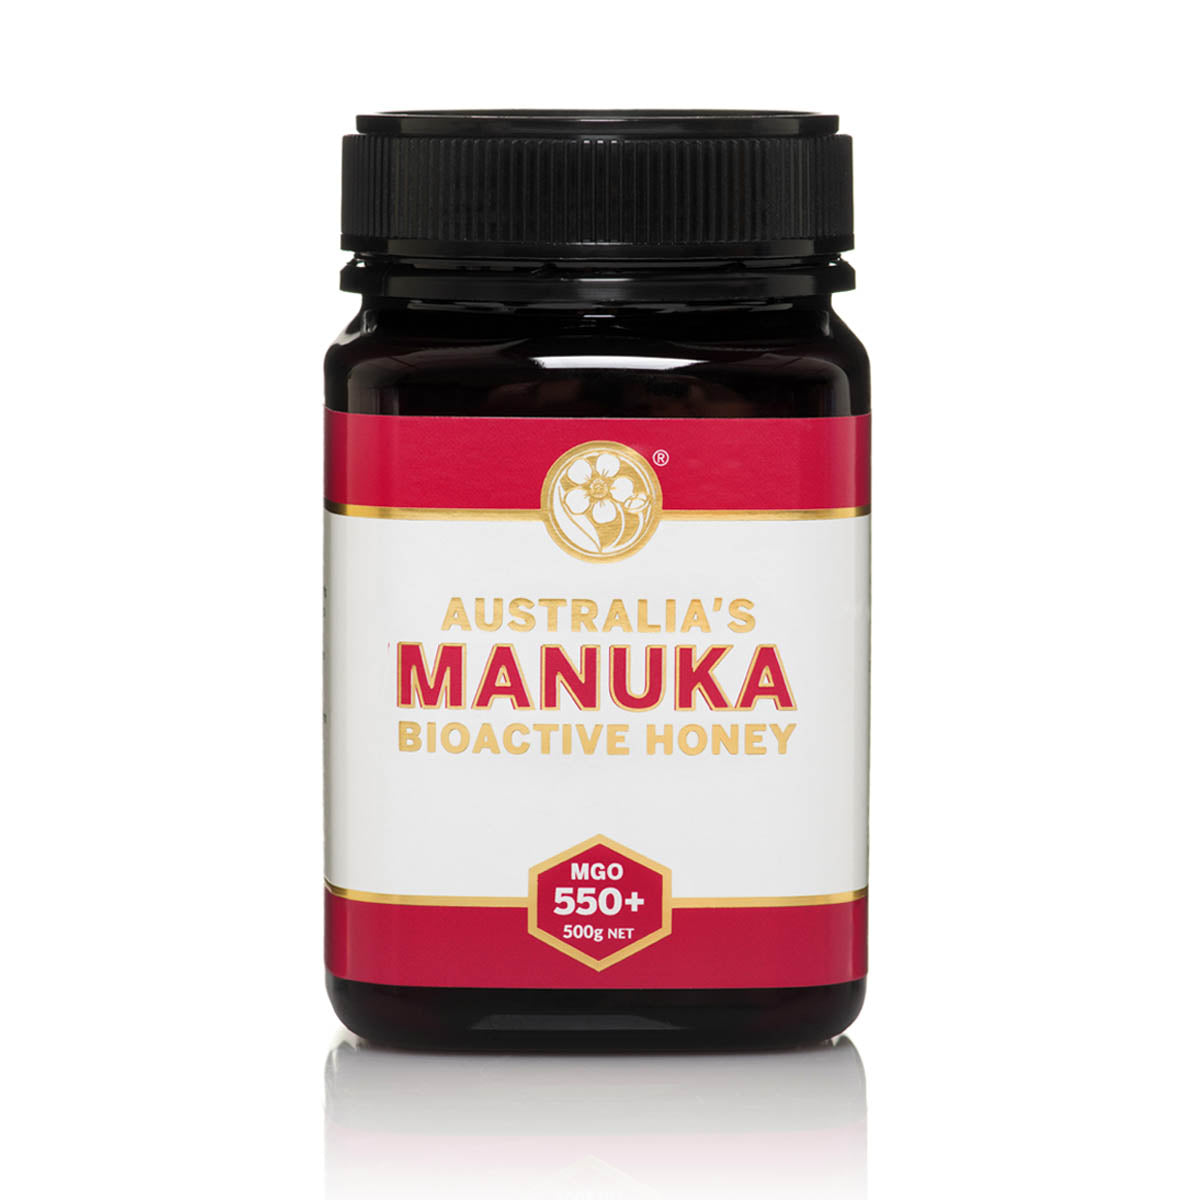 Australia's Manuka Bioactive Honey MGO 550+ Australia's 500g 